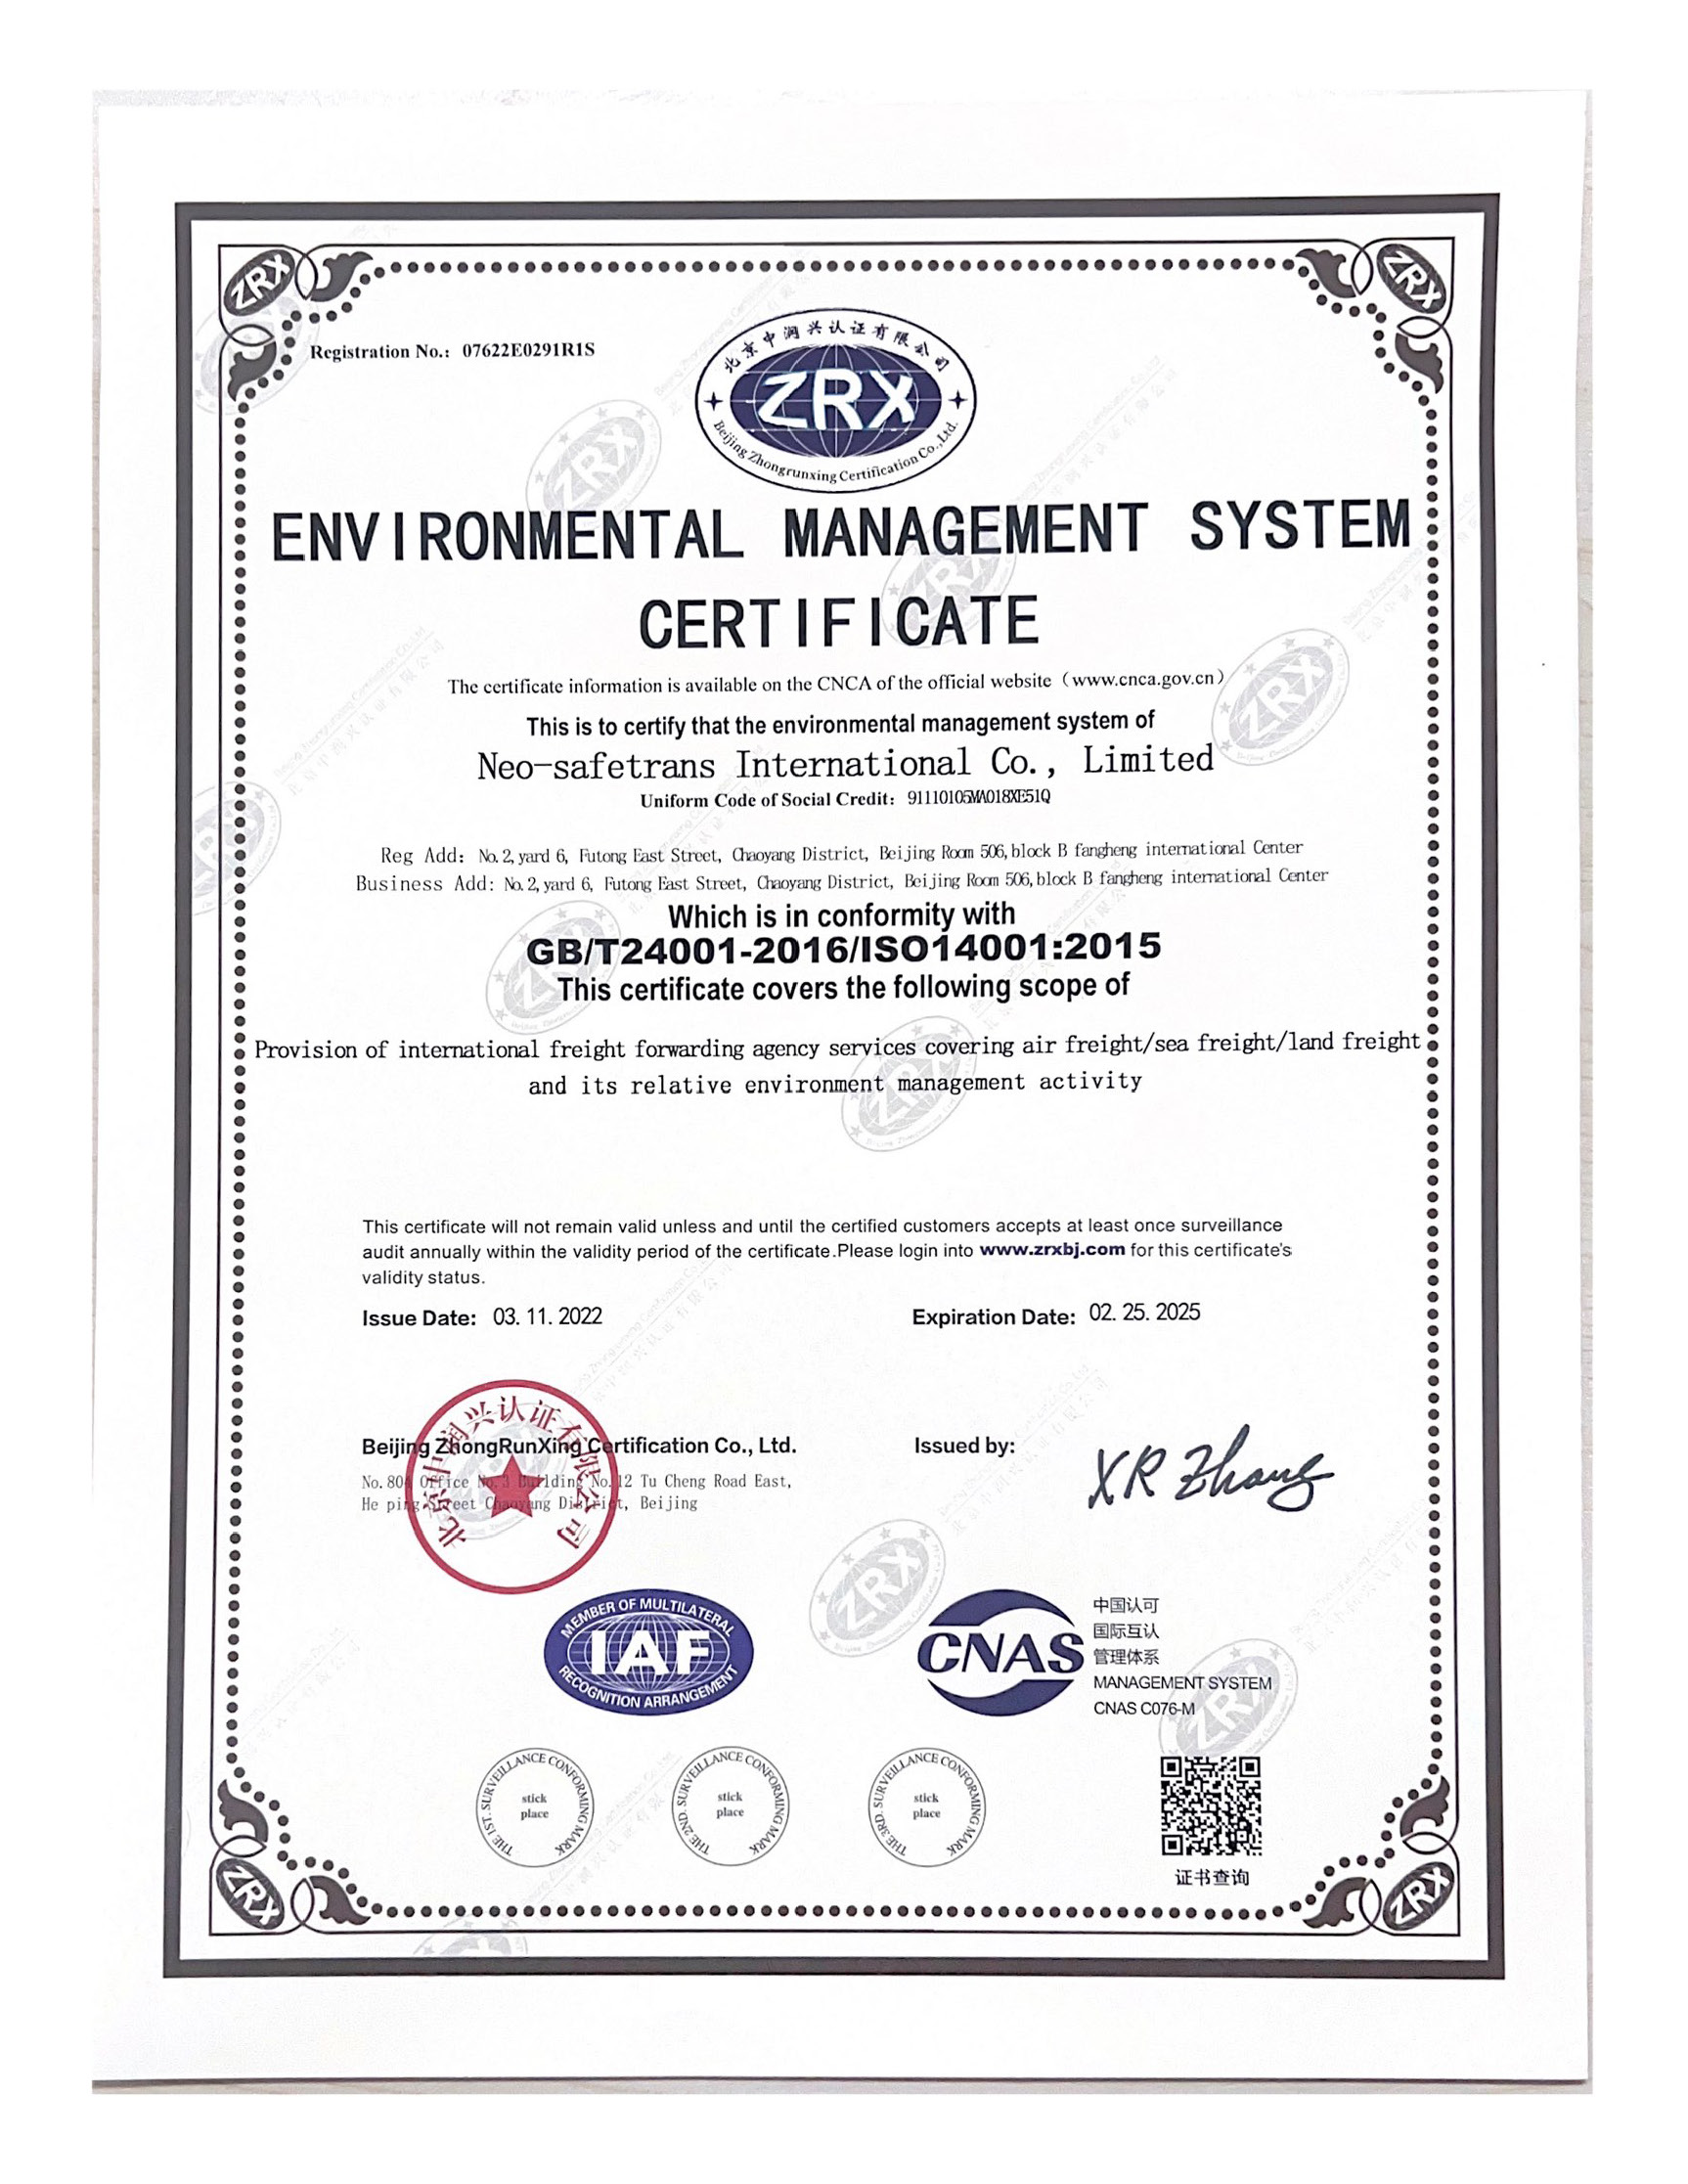 环境管理体系认证证书-英文.jpg